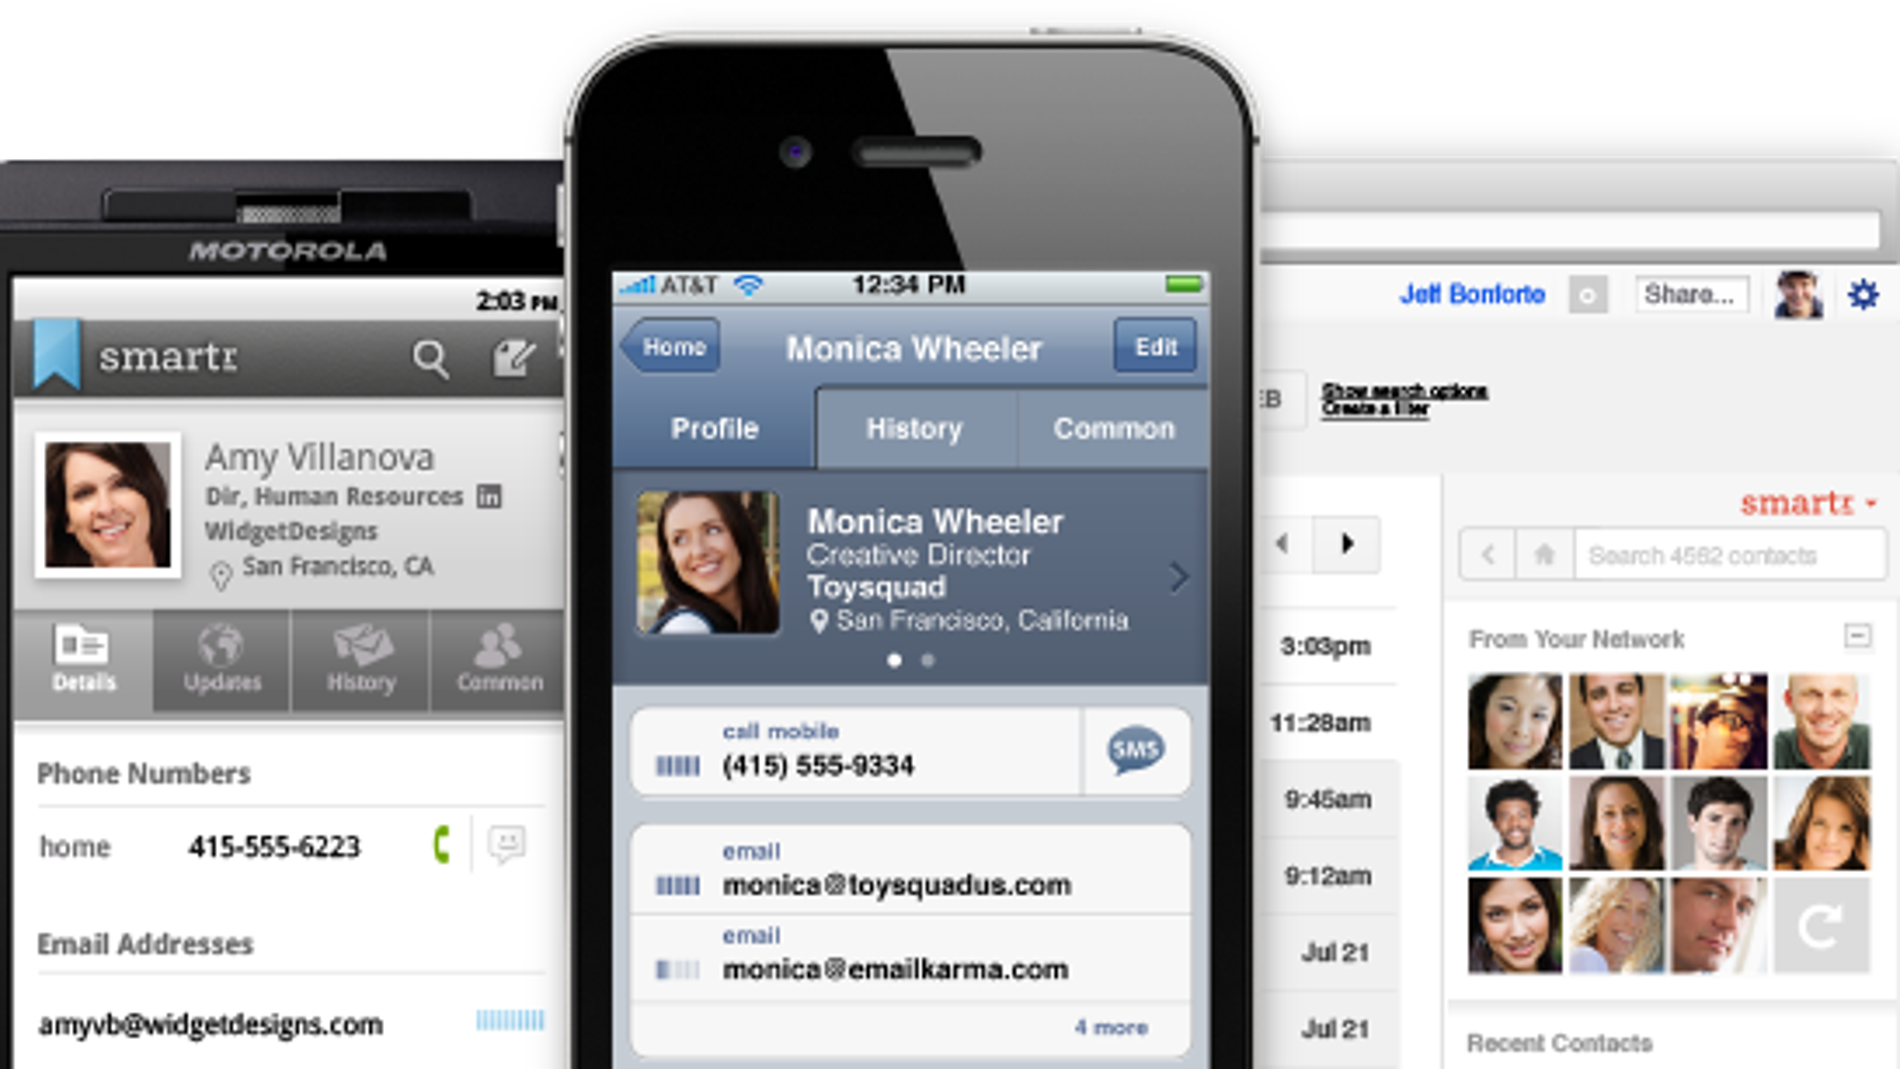 Captura de la aplicación para smartphones Xobni